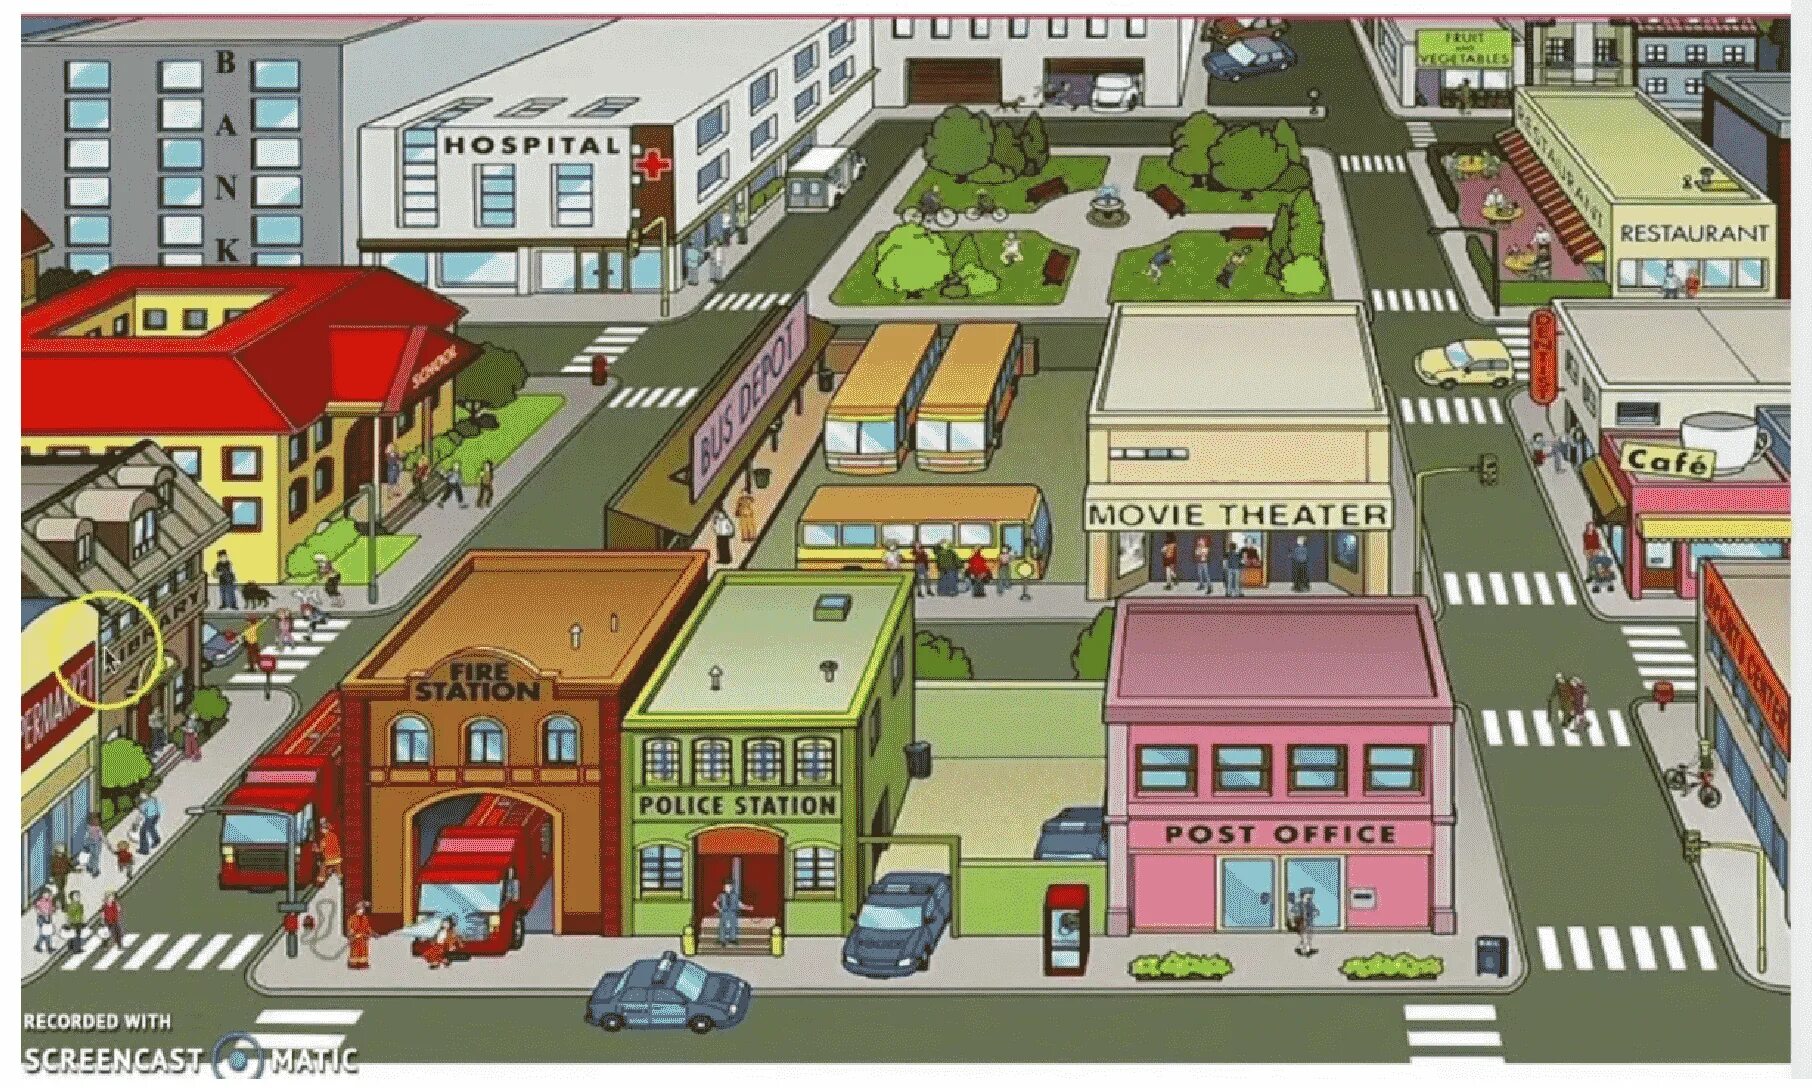 Going around the city. Places in Town для детей. Картинка города для описания. План города для детей. Здания на английском тема город.